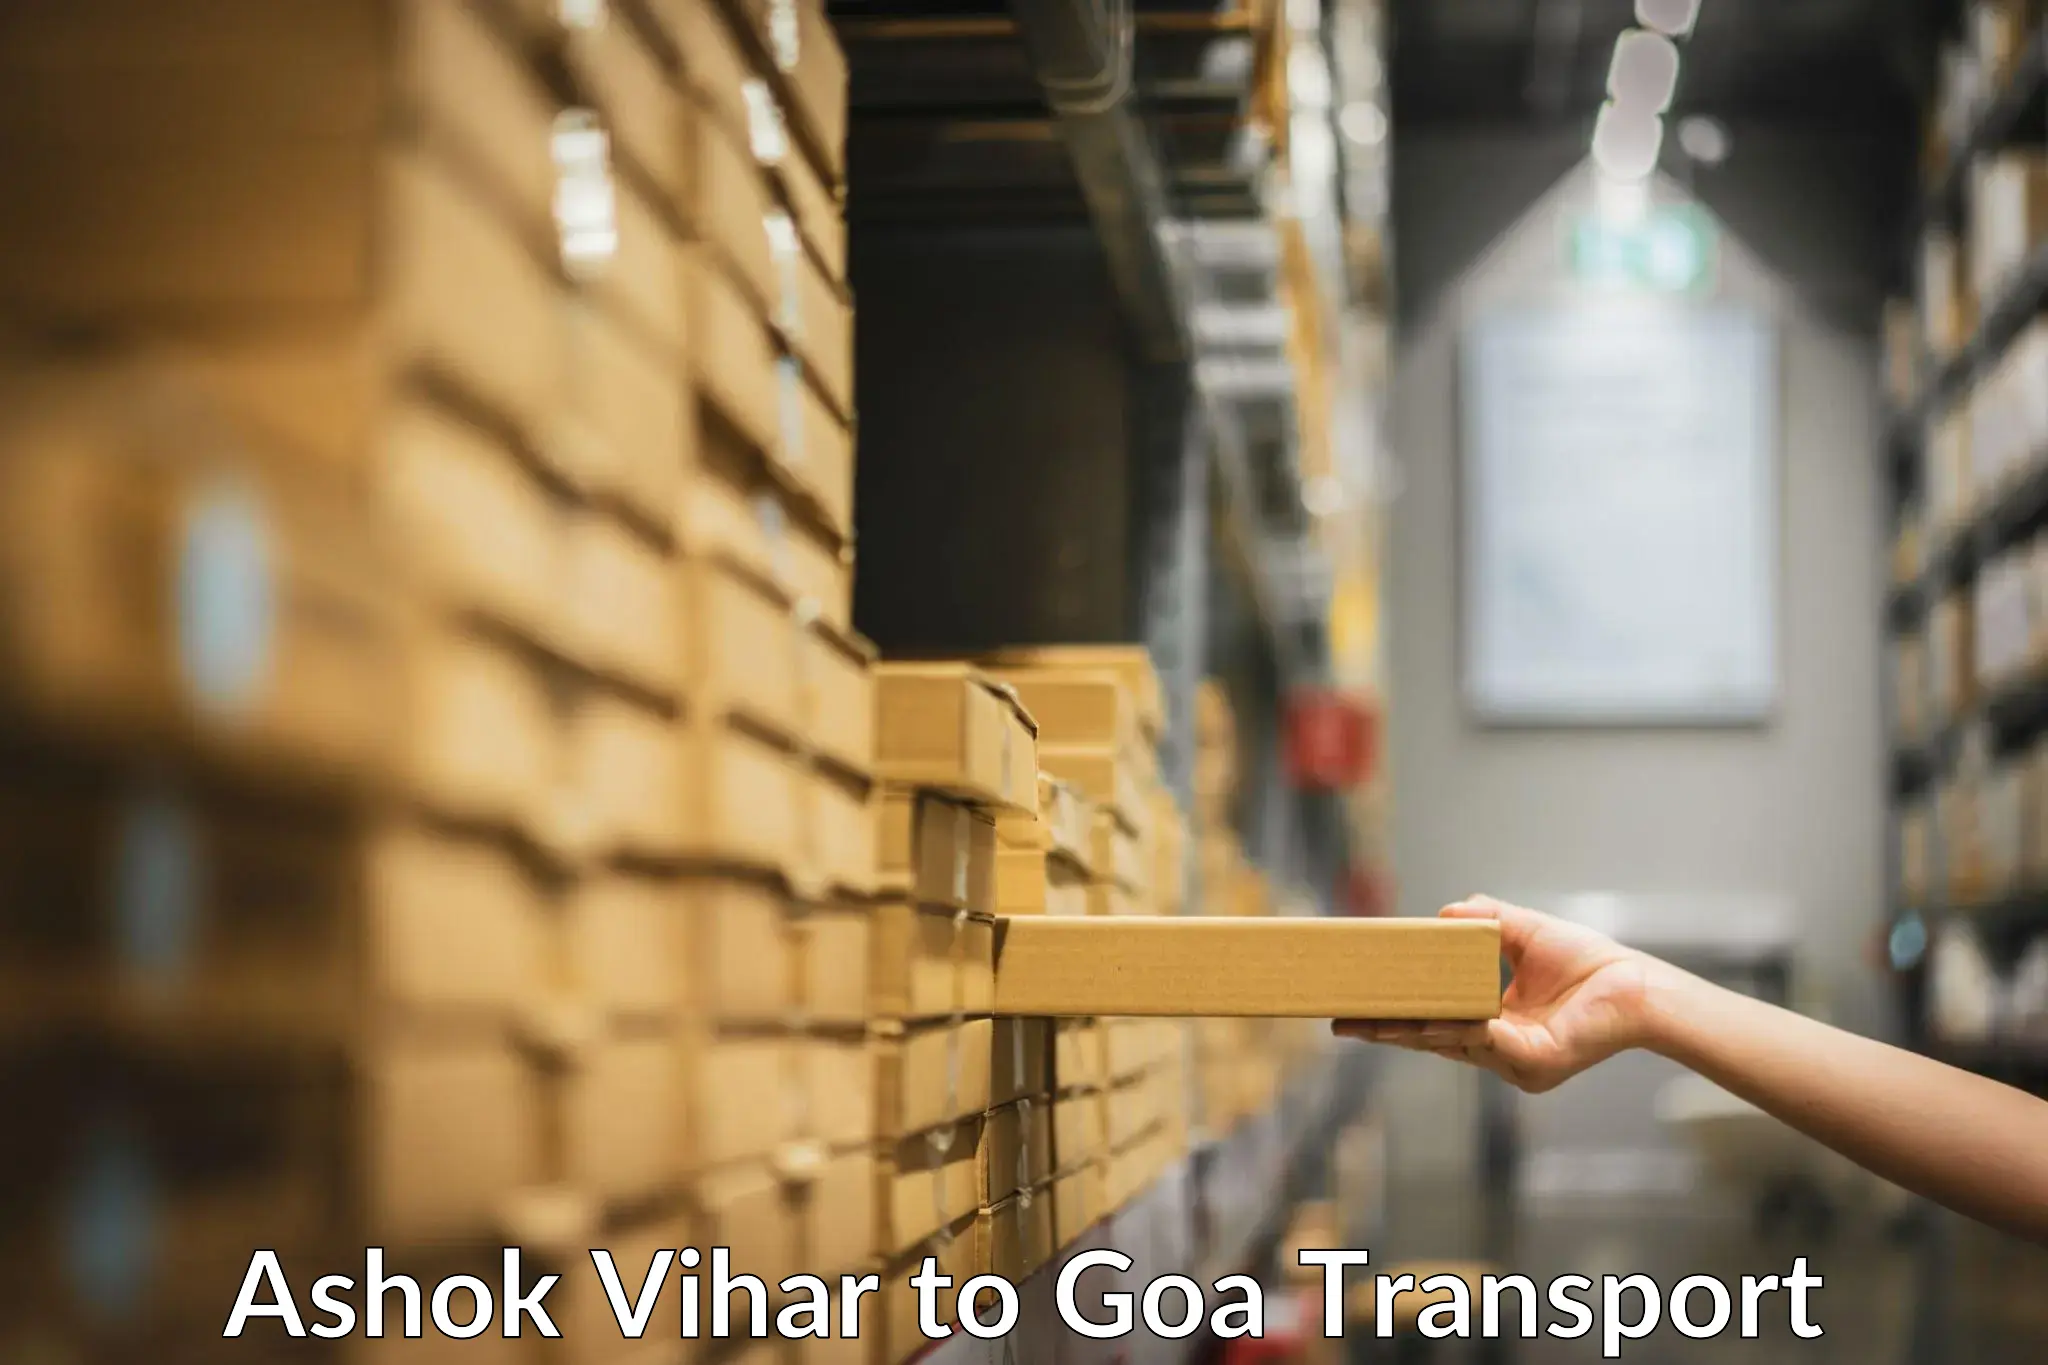 Commercial transport service Ashok Vihar to Vasco da Gama